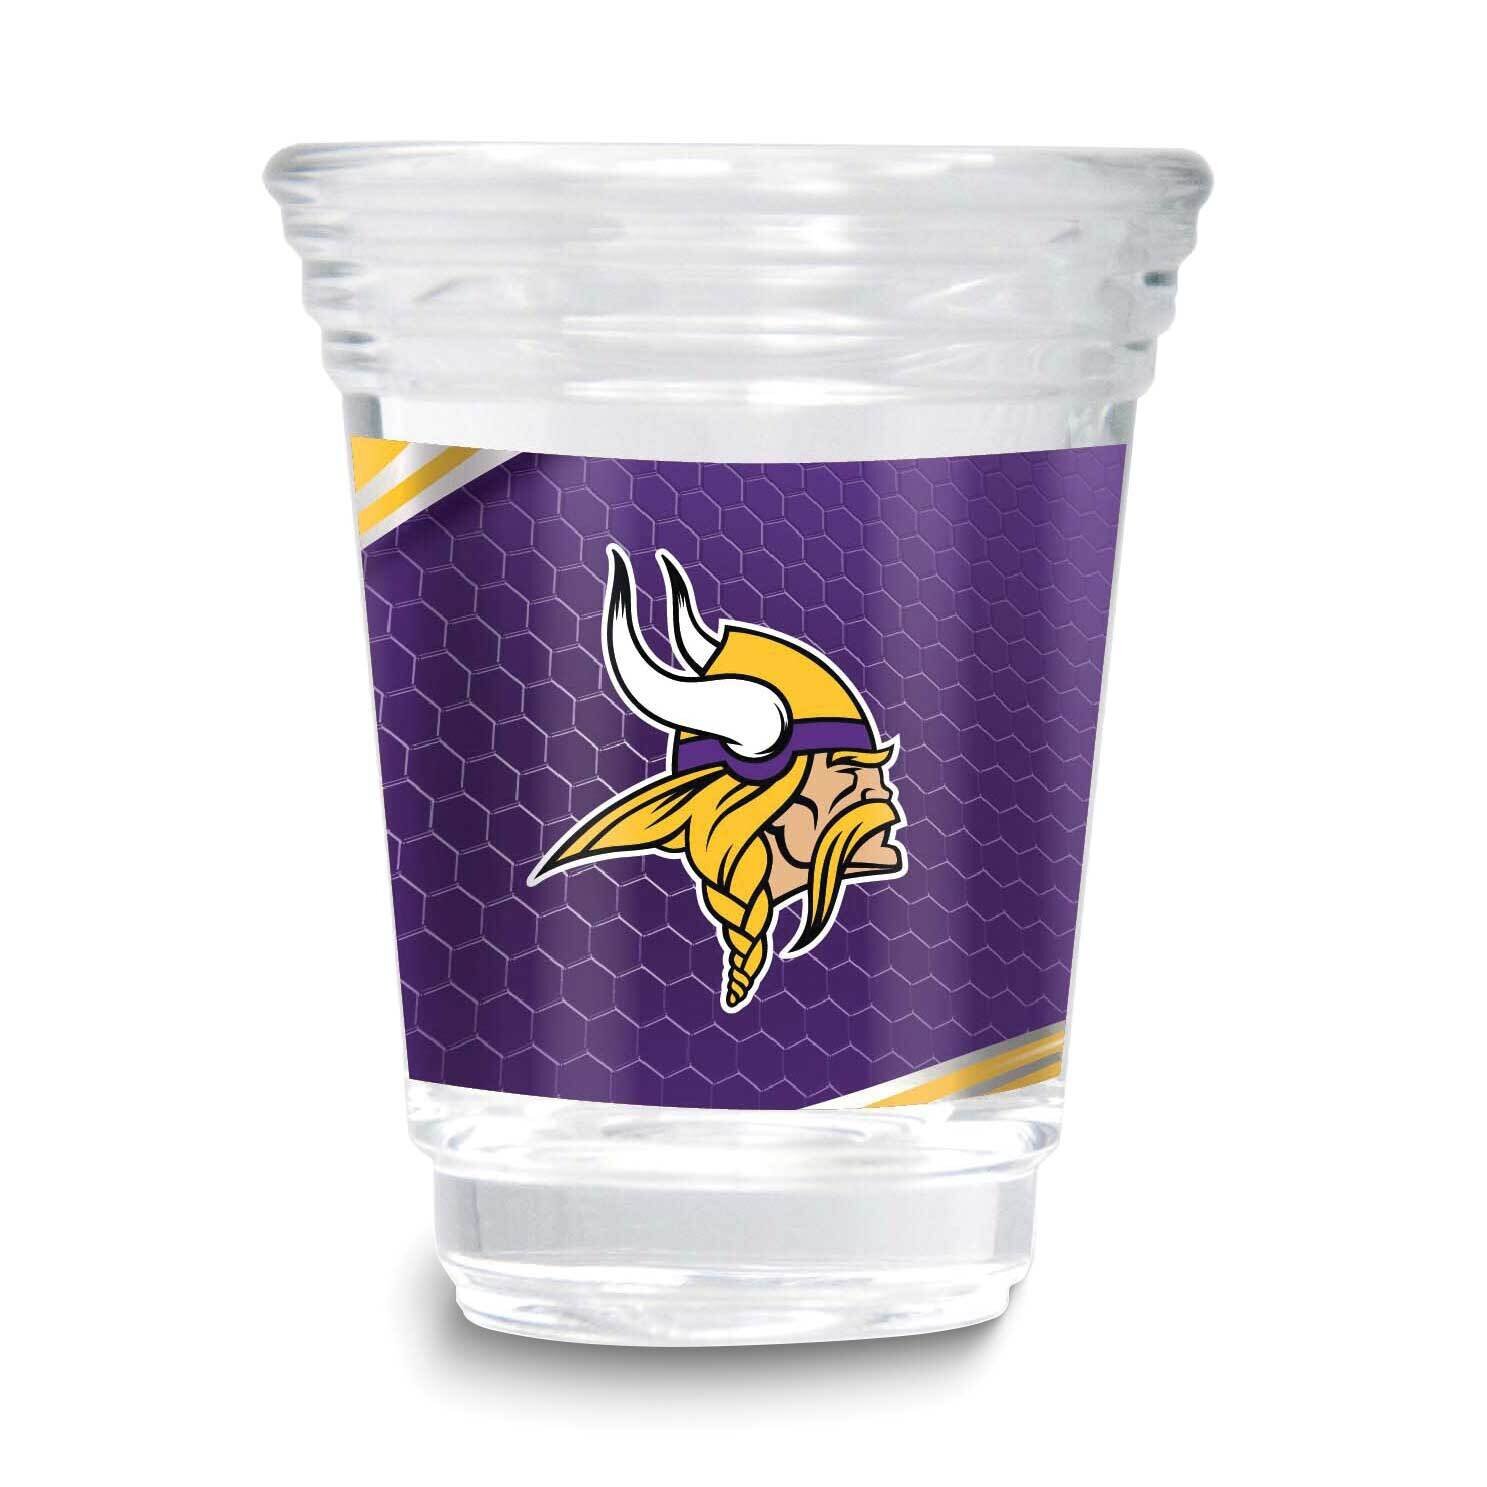 NFL Minnesota Vikings 2oz Square Shot Glass GM26123-VIK